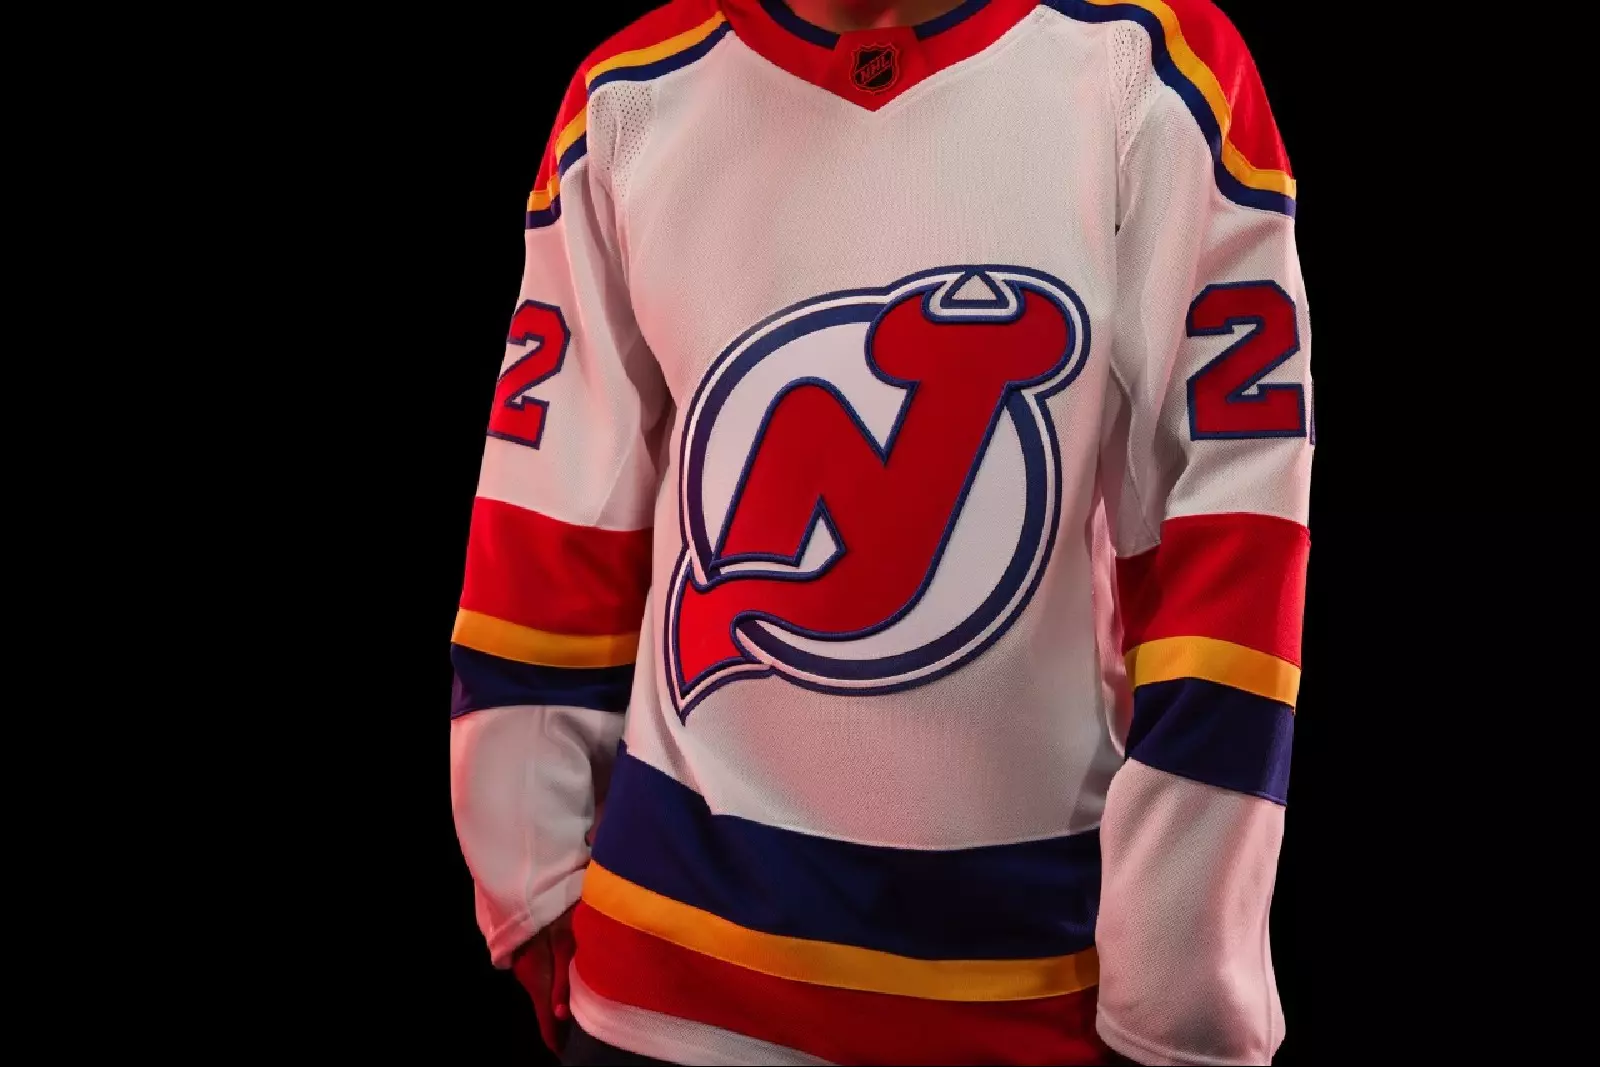 Vintage 1980s New Jersey Devils NHL Hockey Jersey / Sportswear 